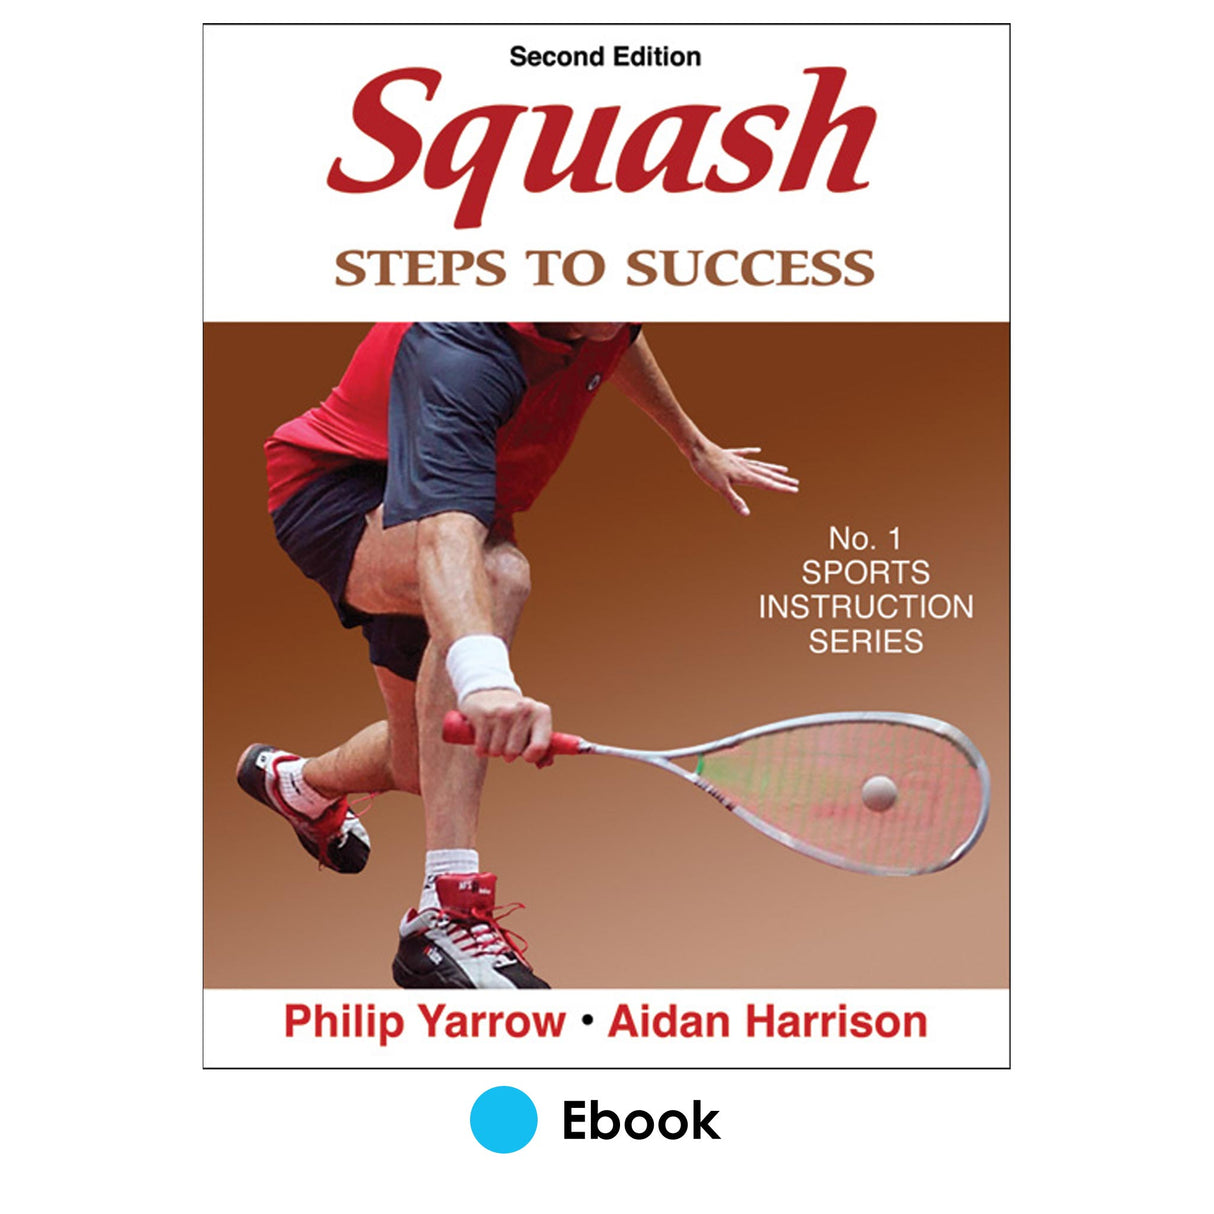 Squash 2nd Edition PDF